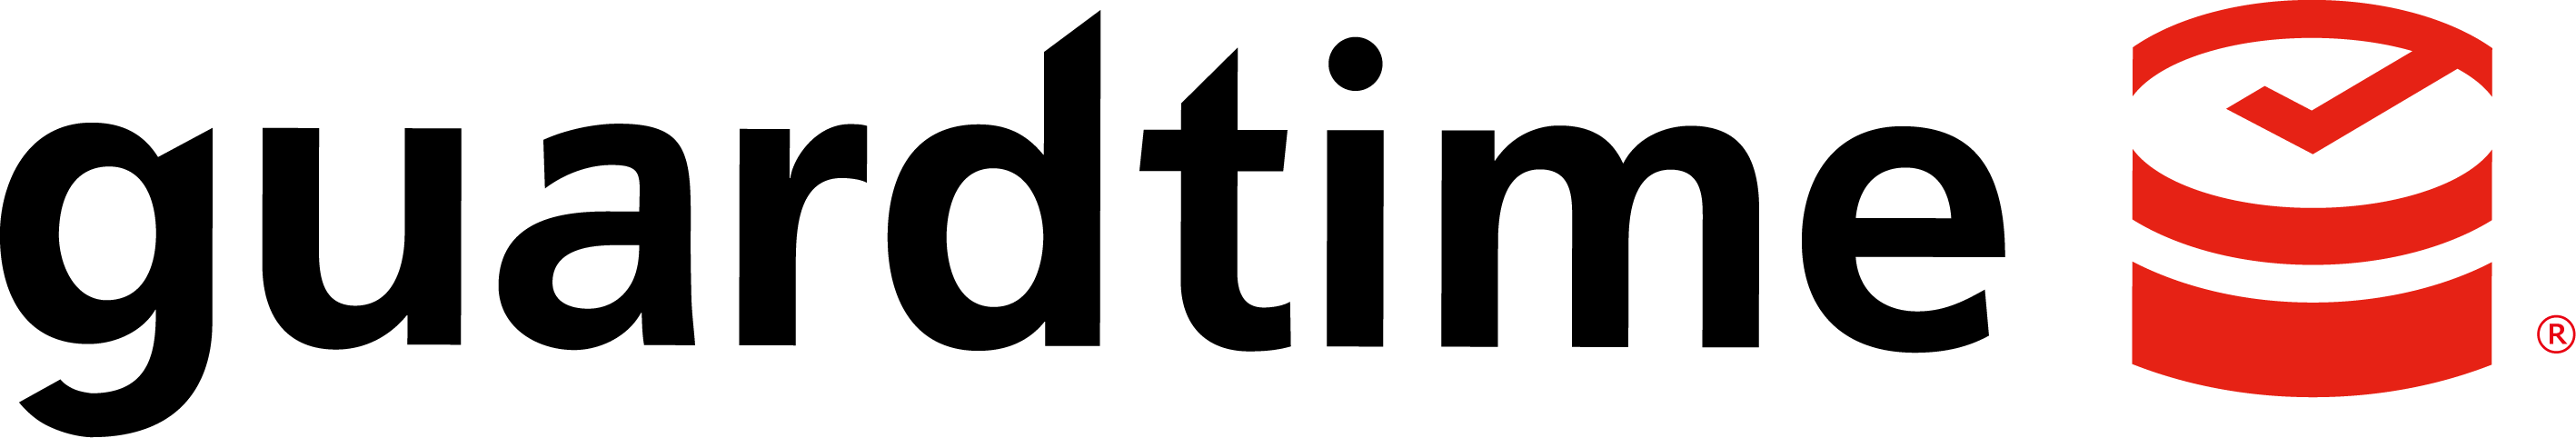 guardtime logo registered-1